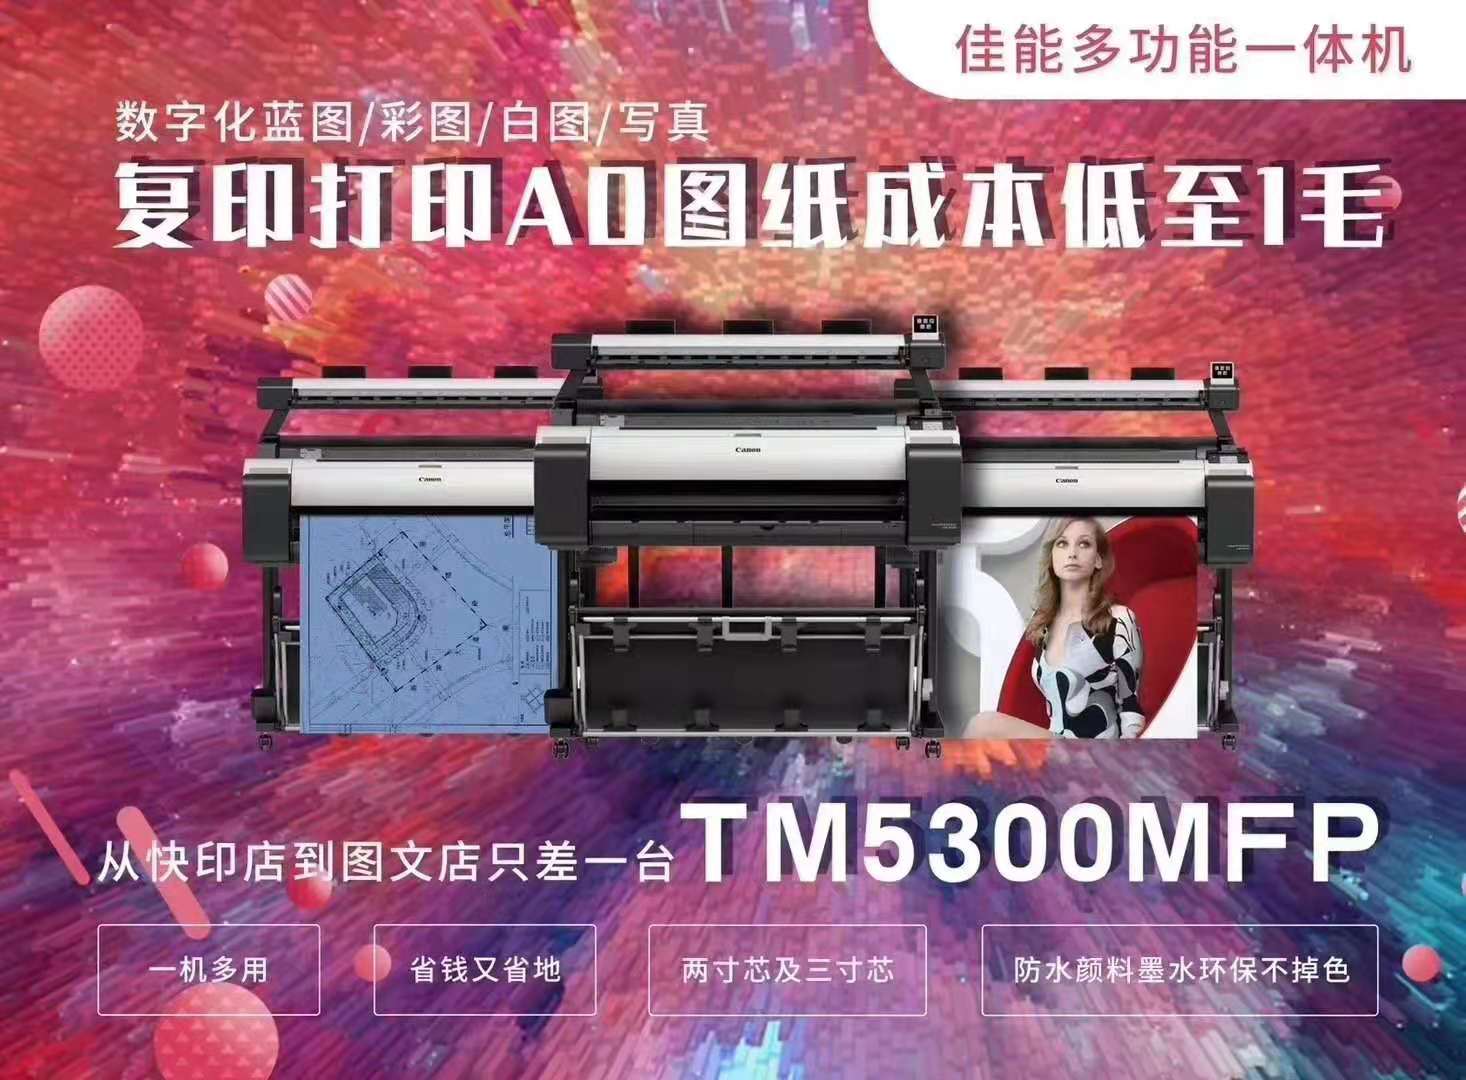 喷墨 彩色复印 打印复印一体机 扫描 大幅面 佳能TM5300 打印 多功能9